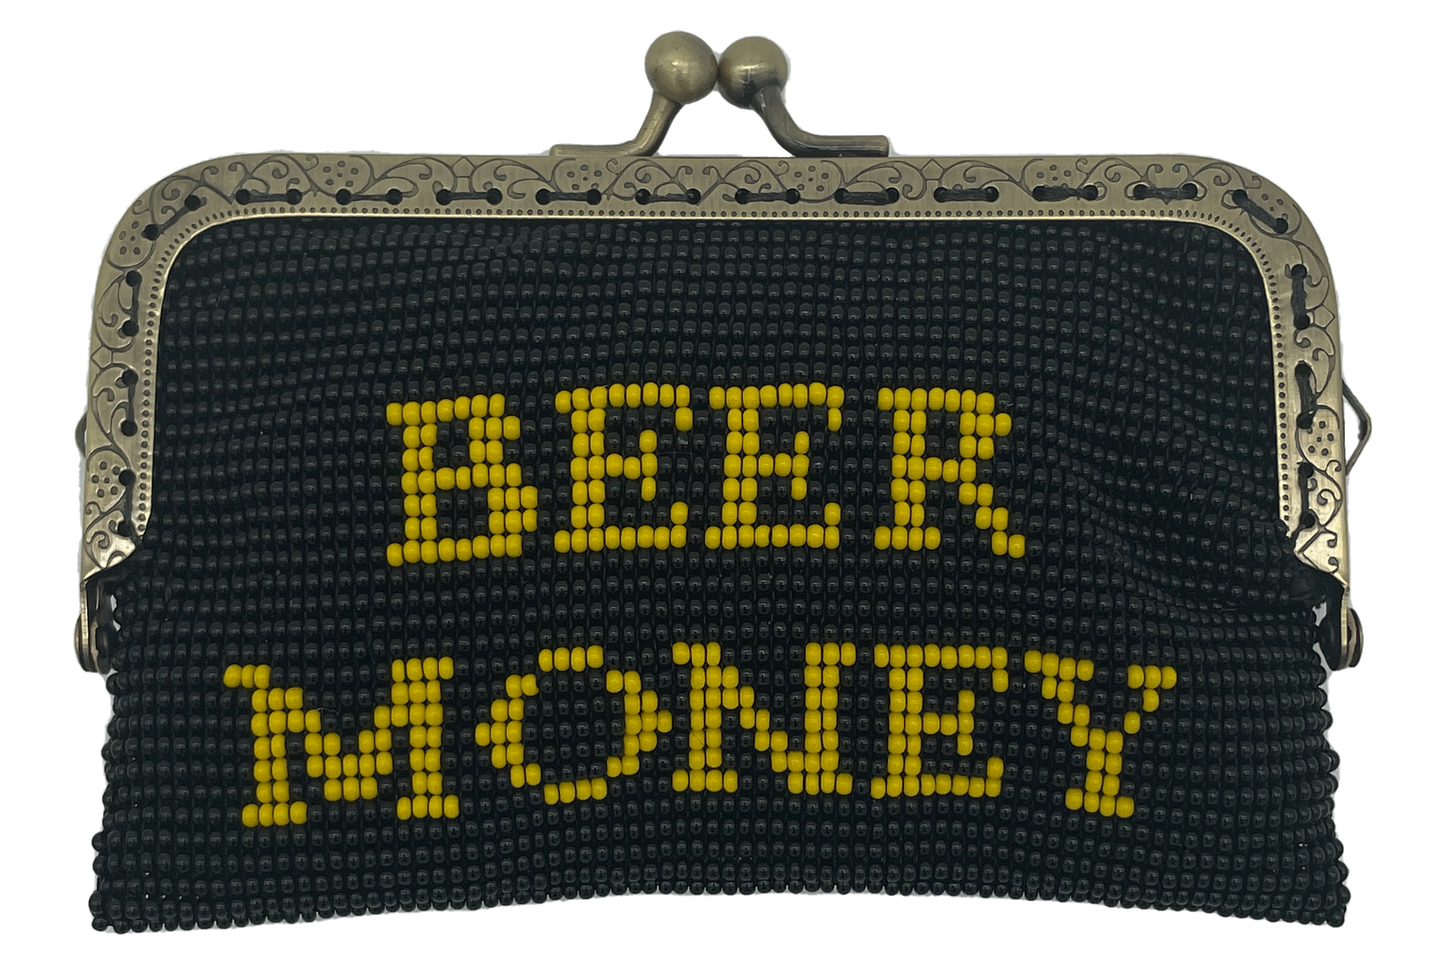 BEER MONEY